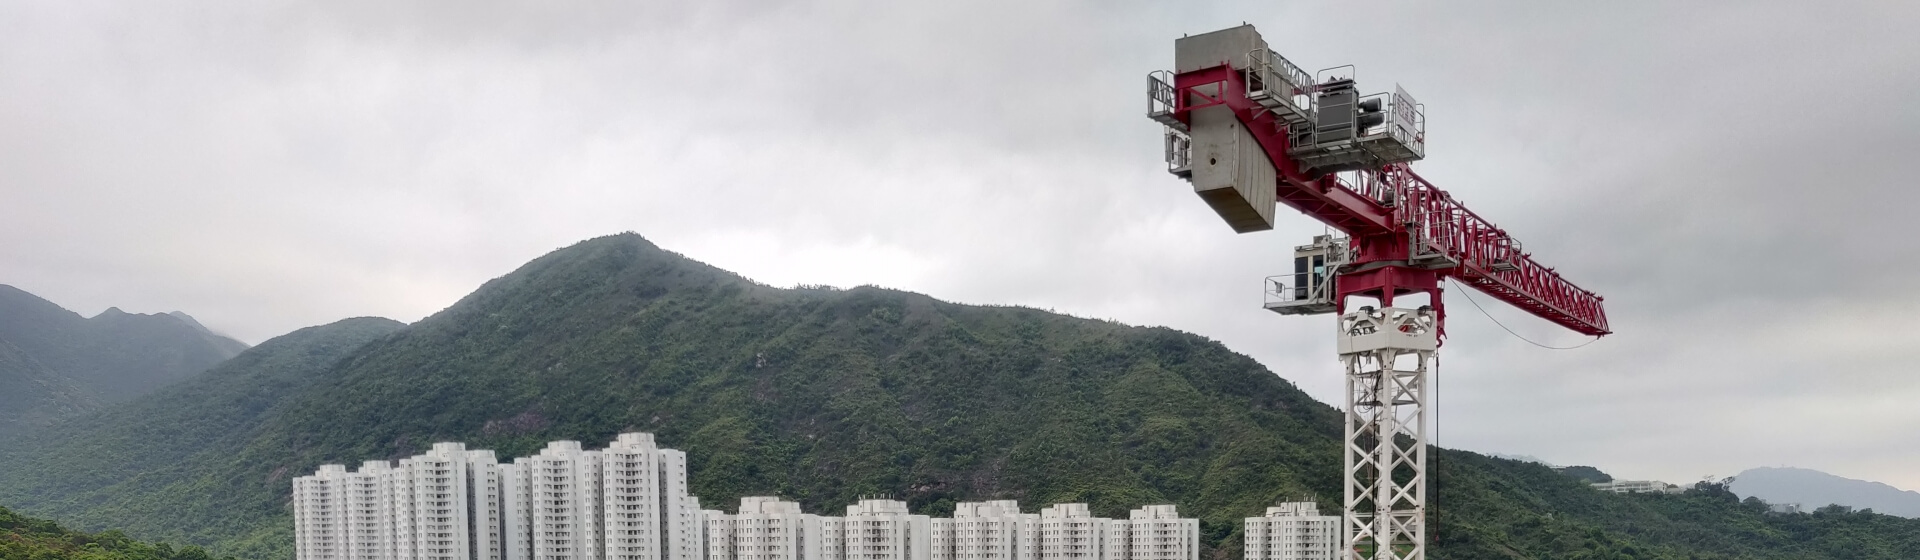 NFT-deploys-Potain-topless-cranes-for-Hong-Kong-housing-project-04.jpg